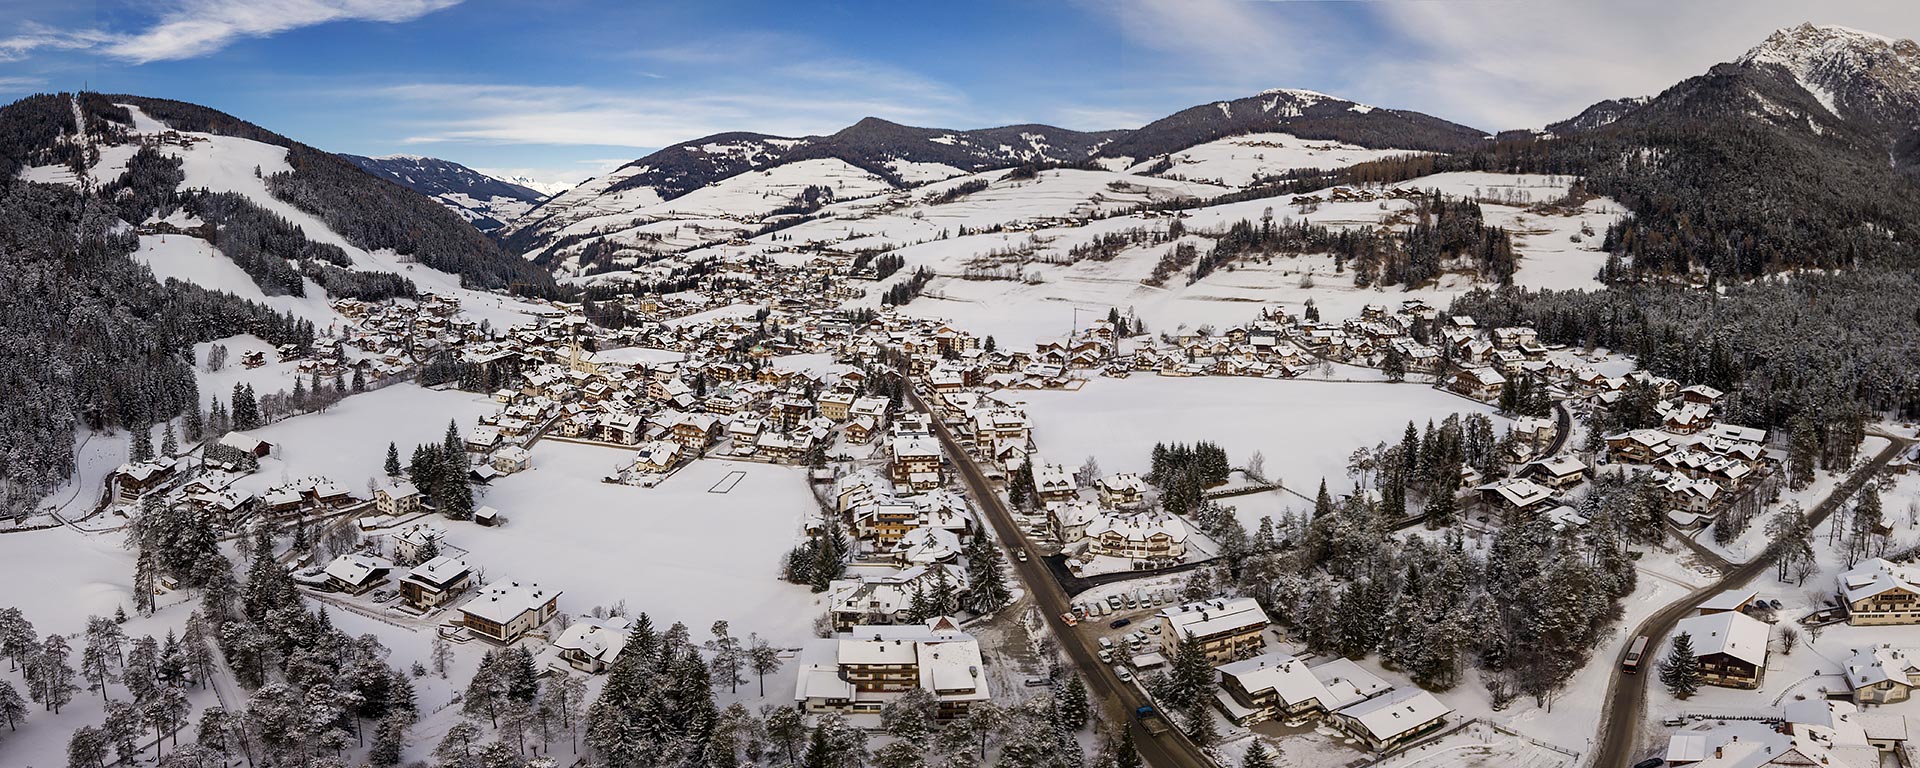 fantastic view over the snow covered village of San Vigilio di Marebbe in winter